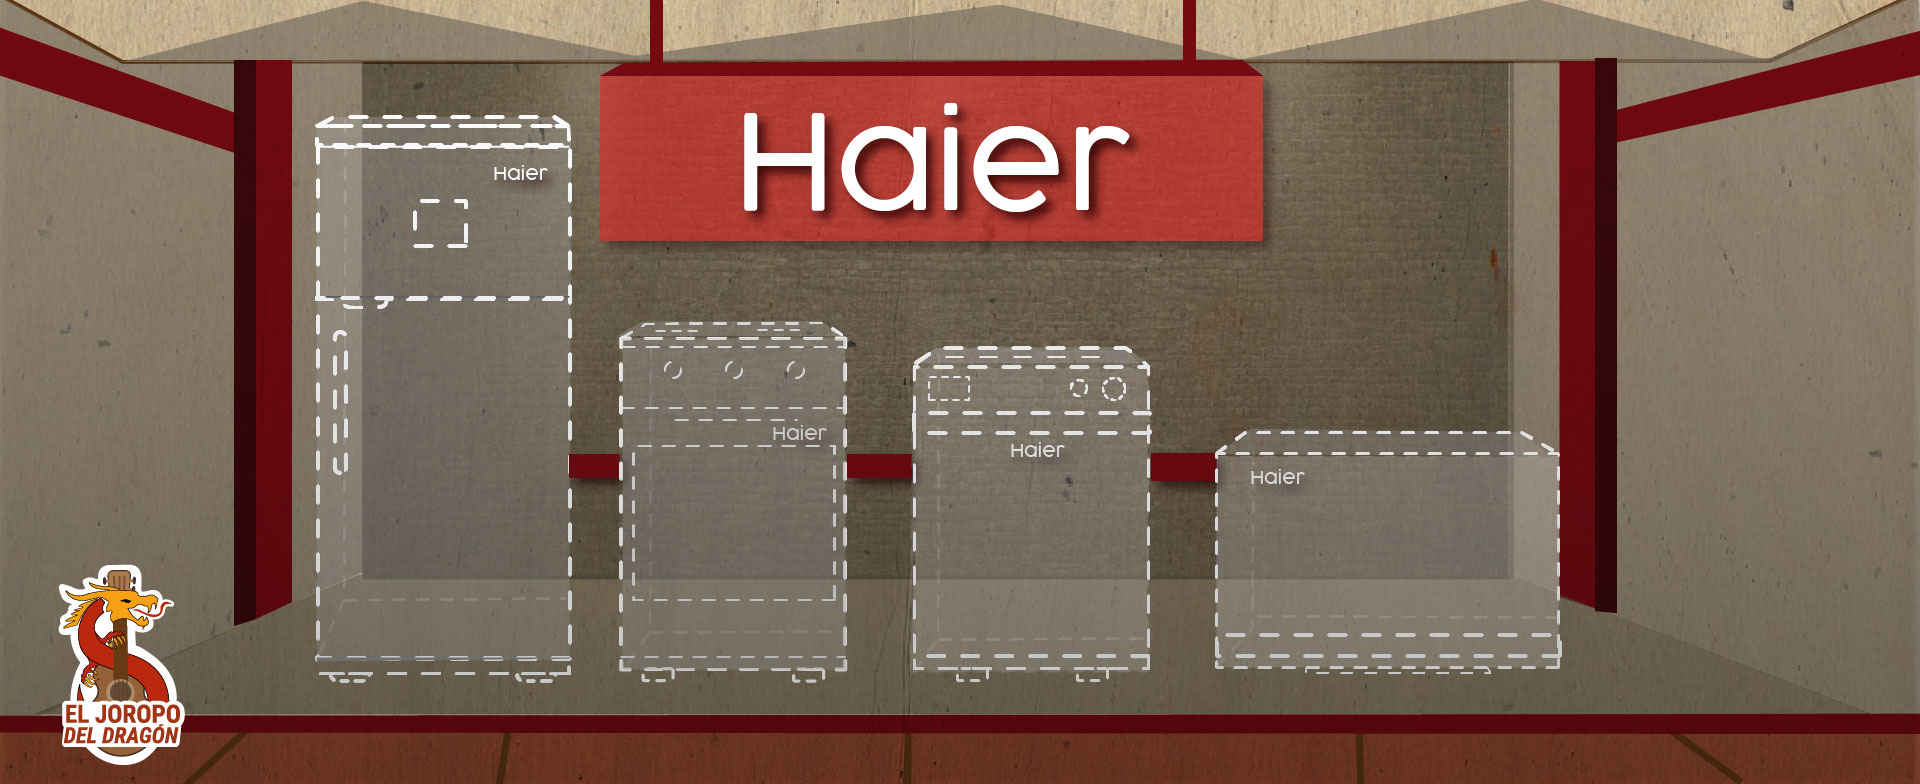 Ilustração do produto Haier